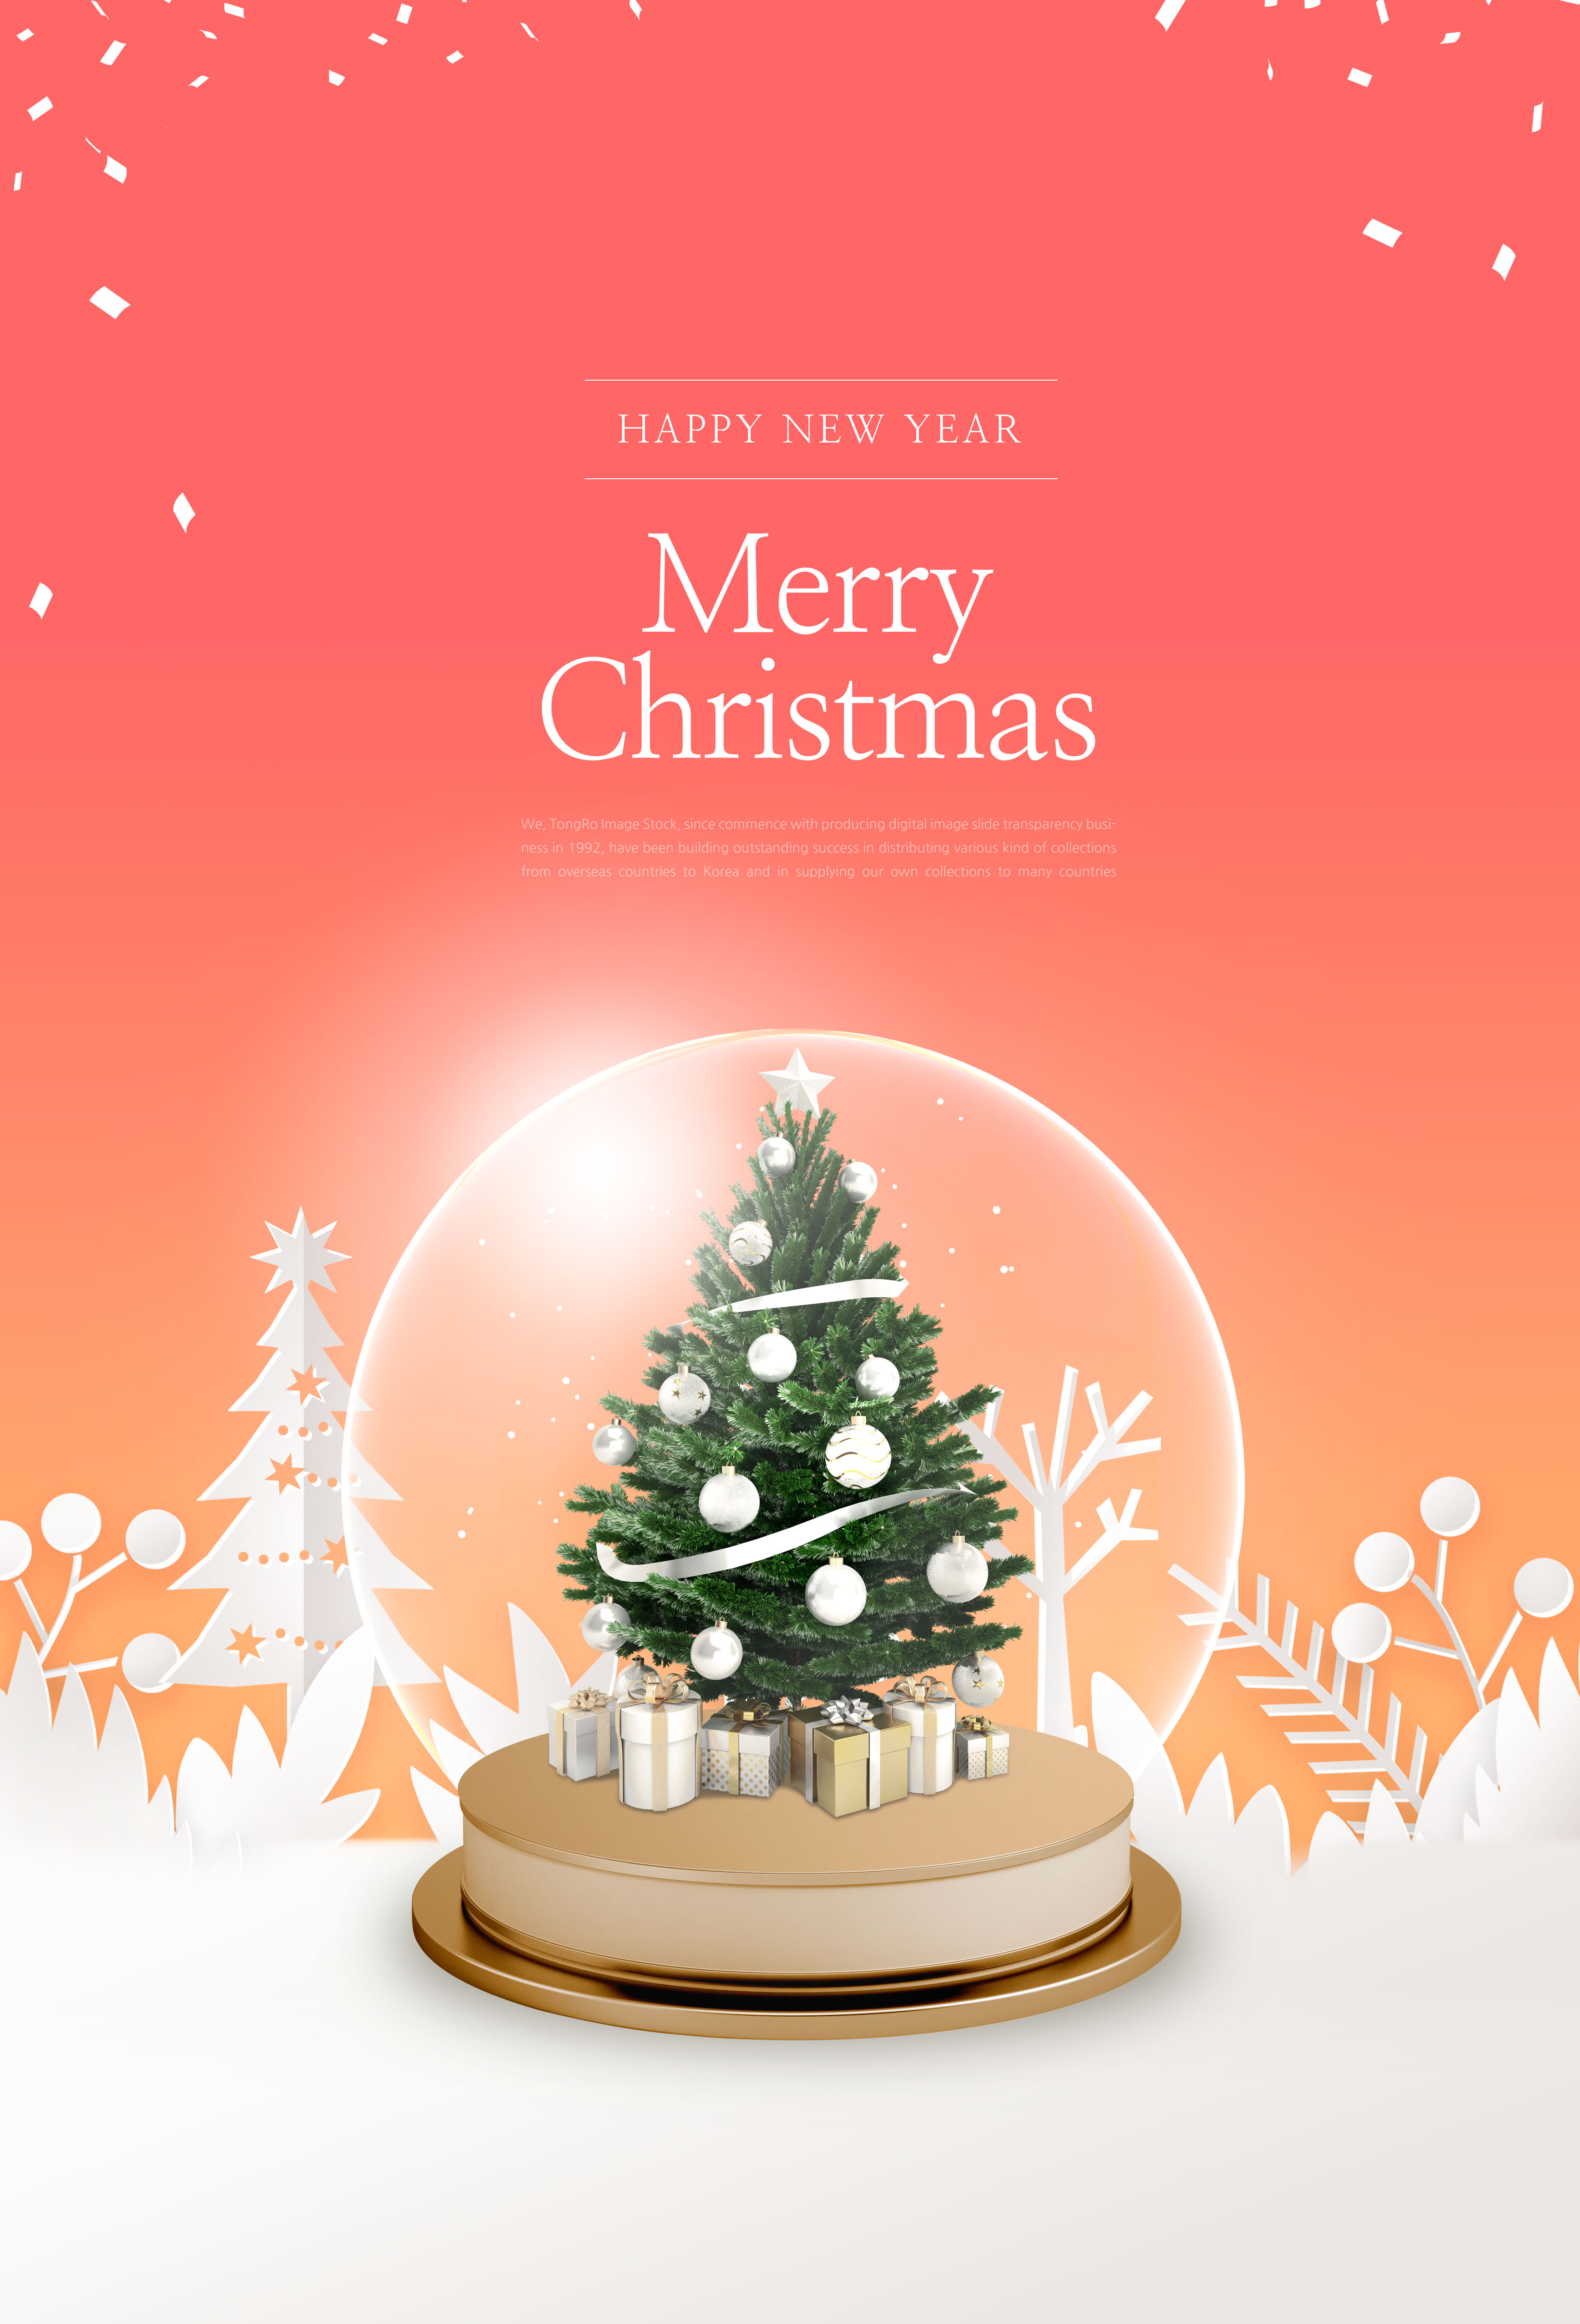 创意玻璃雪球圣诞/新年主题海报设计素材插图